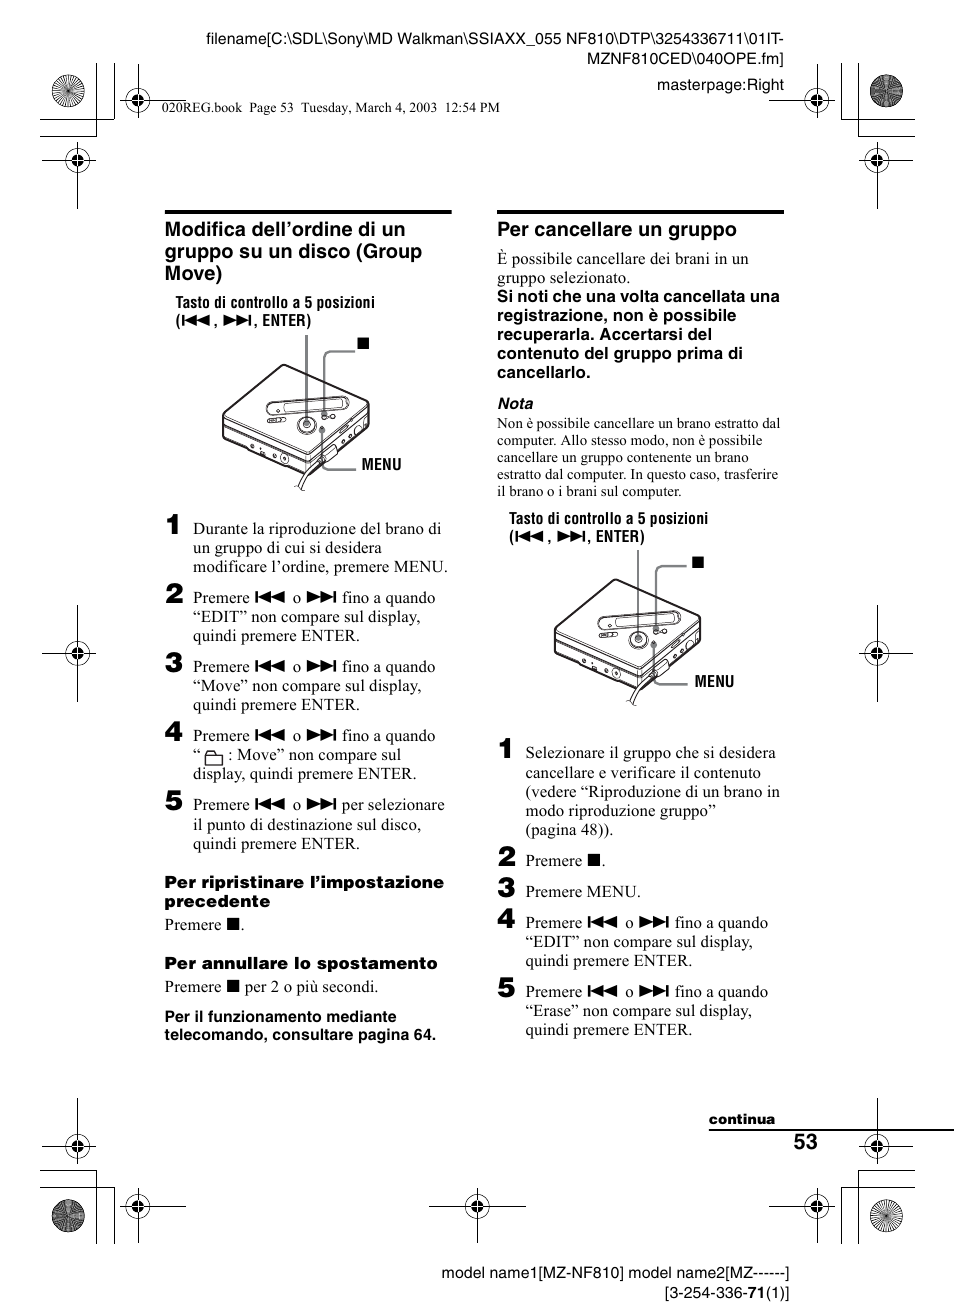 Per cancellare un gruppo, Modifica dell’ordine di un gruppo su un disco, Group move) | Sony MZ-NF810 Manuale d'uso | Pagina 53 / 128